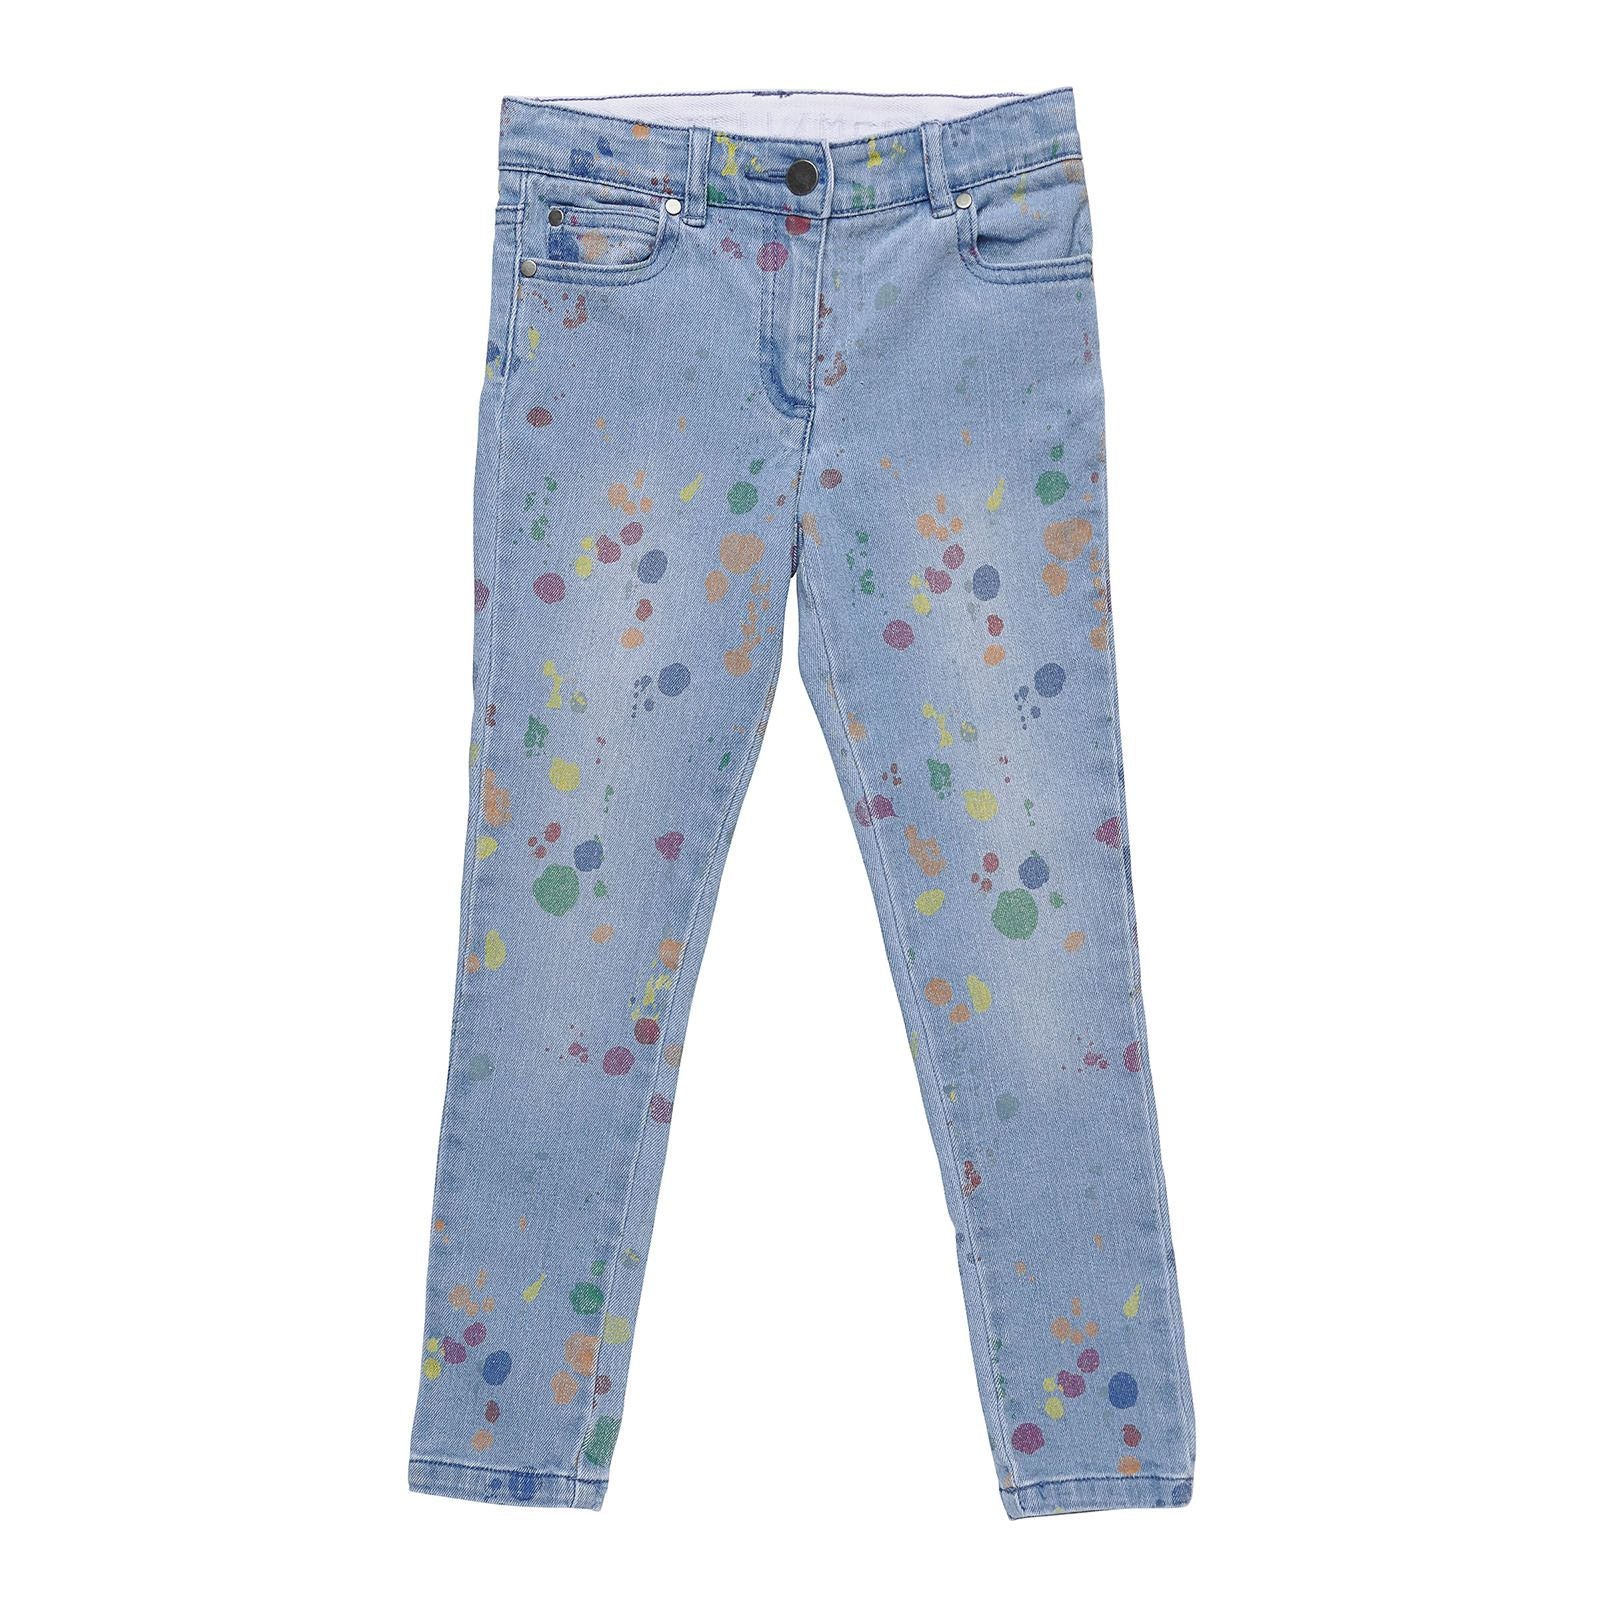 Girls Blue Denim Jeans With Multicolour Splat Print Trims - CÉMAROSE | Children's Fashion Store